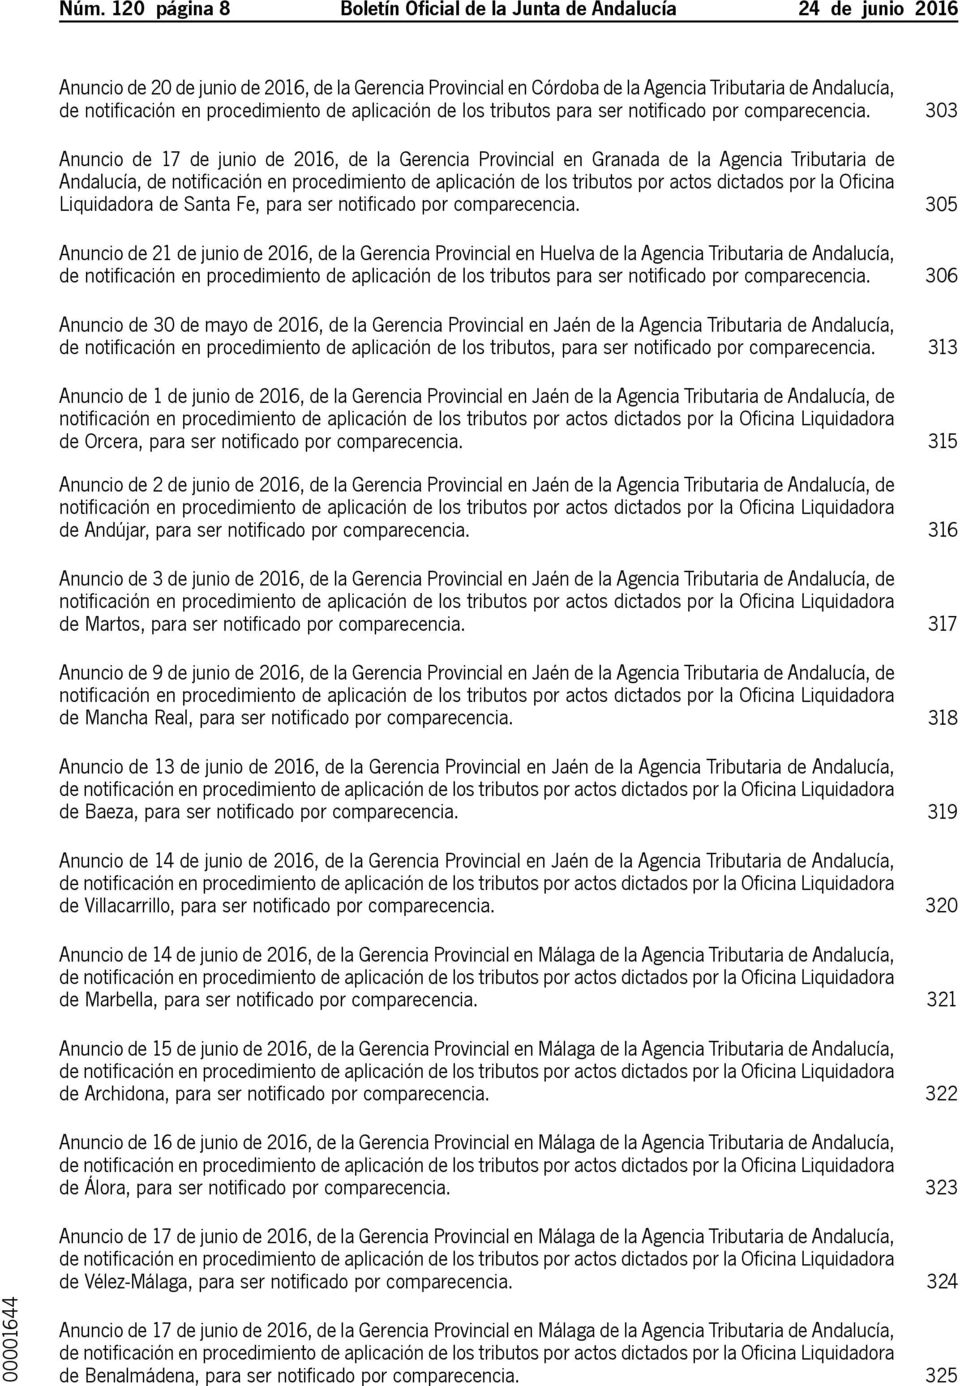 303 Anuncio de 17 de junio de 2016, de la Gerencia Provincial en Granada de la Agencia Tributaria de Andalucía, de notificación en procedimiento de aplicación de los tributos por actos dictados por